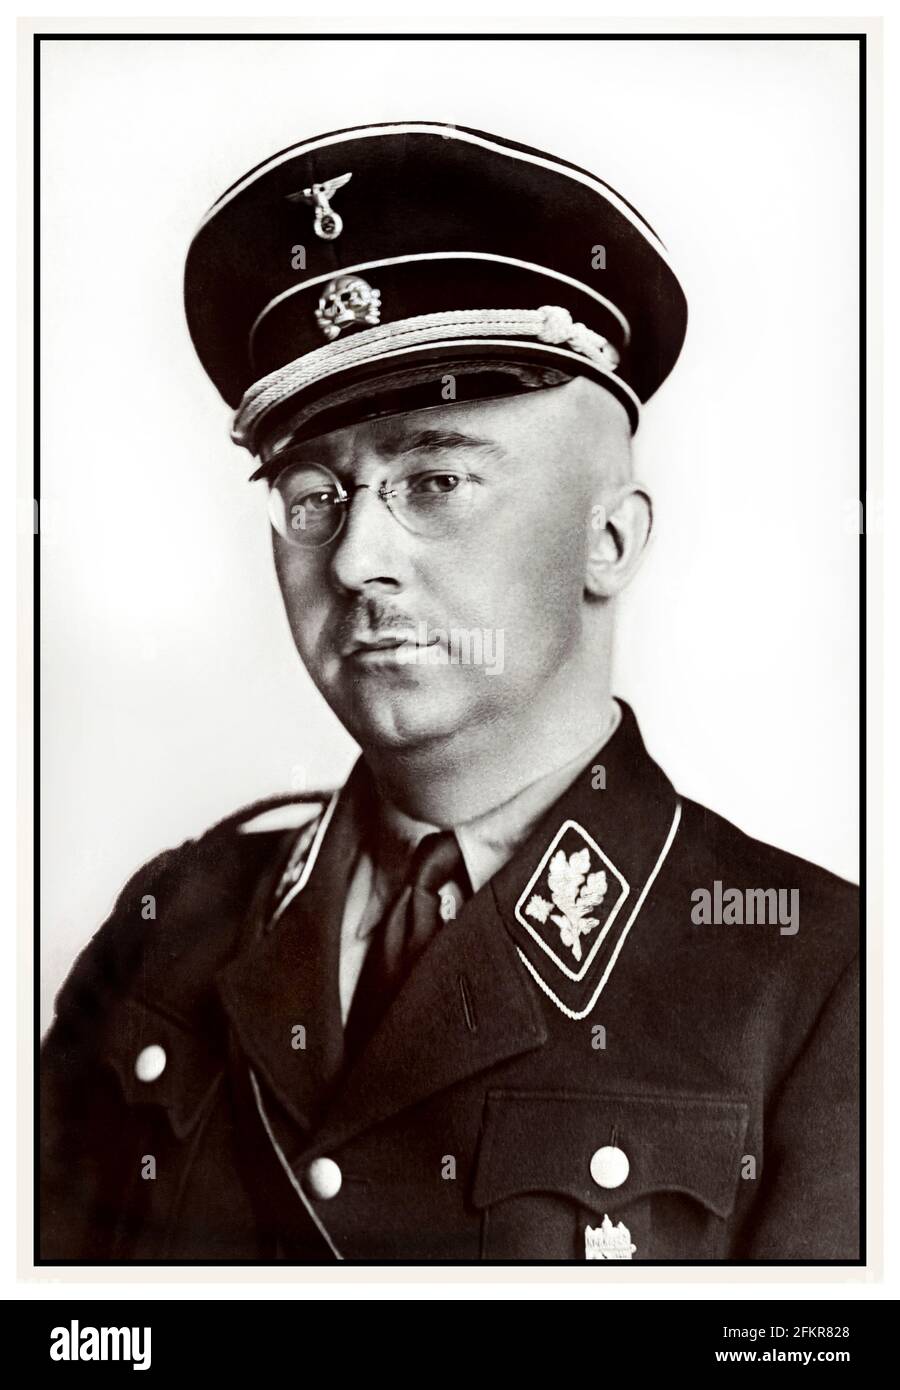 Portrait de Heinrich Himmler dans l'uniforme nazi Waffen SS des années 1940 WW2 politicien national-socialiste allemand commandant militaire nazi police secrète. Himmler était l'un des hommes les plus puissants de l'Allemagne nazie et l'un des responsables les plus directs de l'Holocauste. A facilité le génocide en Europe et à l'est. Suicide commis en 1945 après avoir été capturé fuyant sous une autre identité. Deuxième Guerre mondiale Banque D'Images